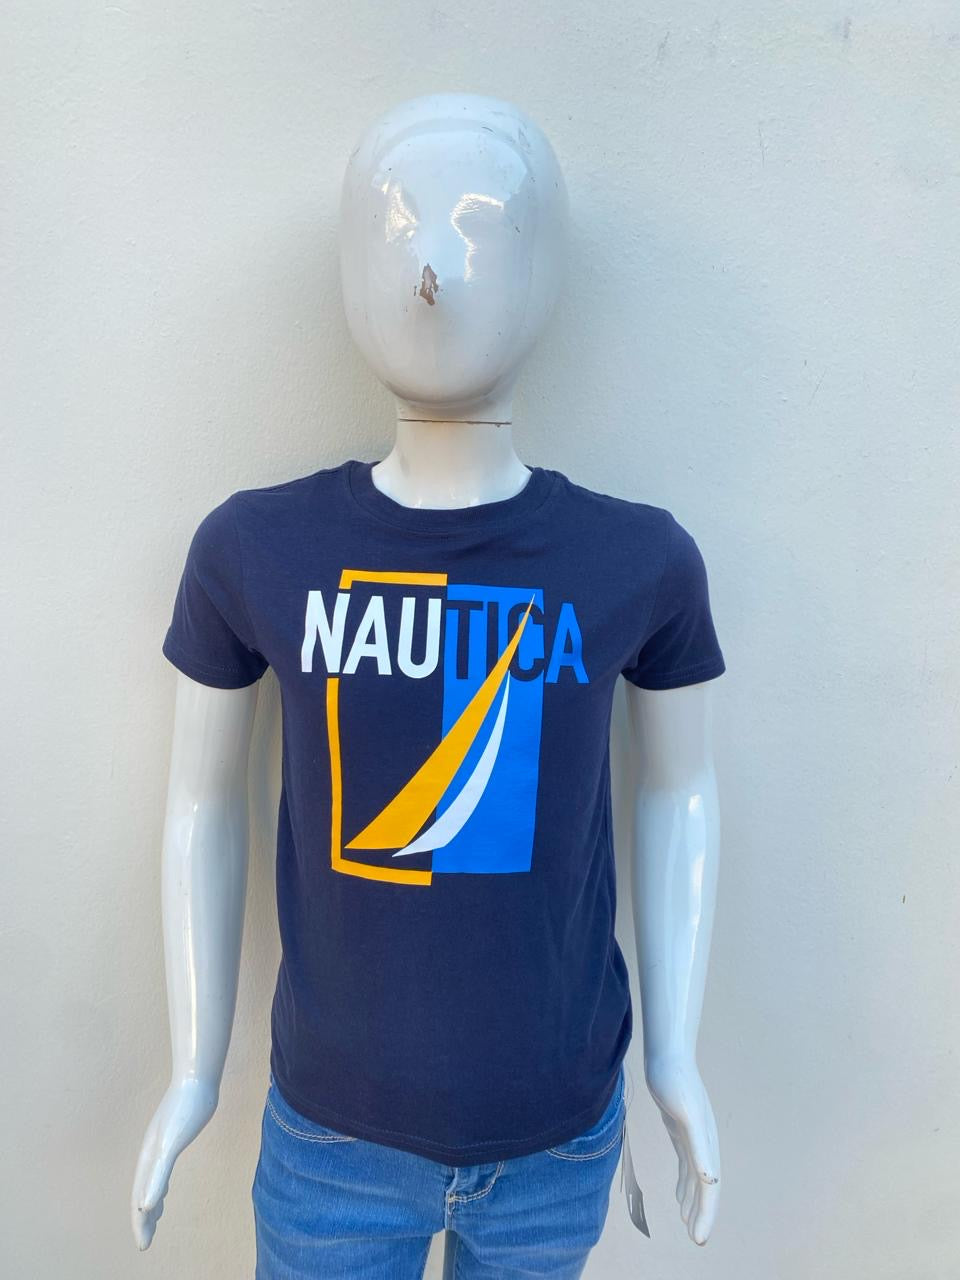 T-shirt Nautica original, azul marino con logotipo de la marca con amarillo y azul claro.